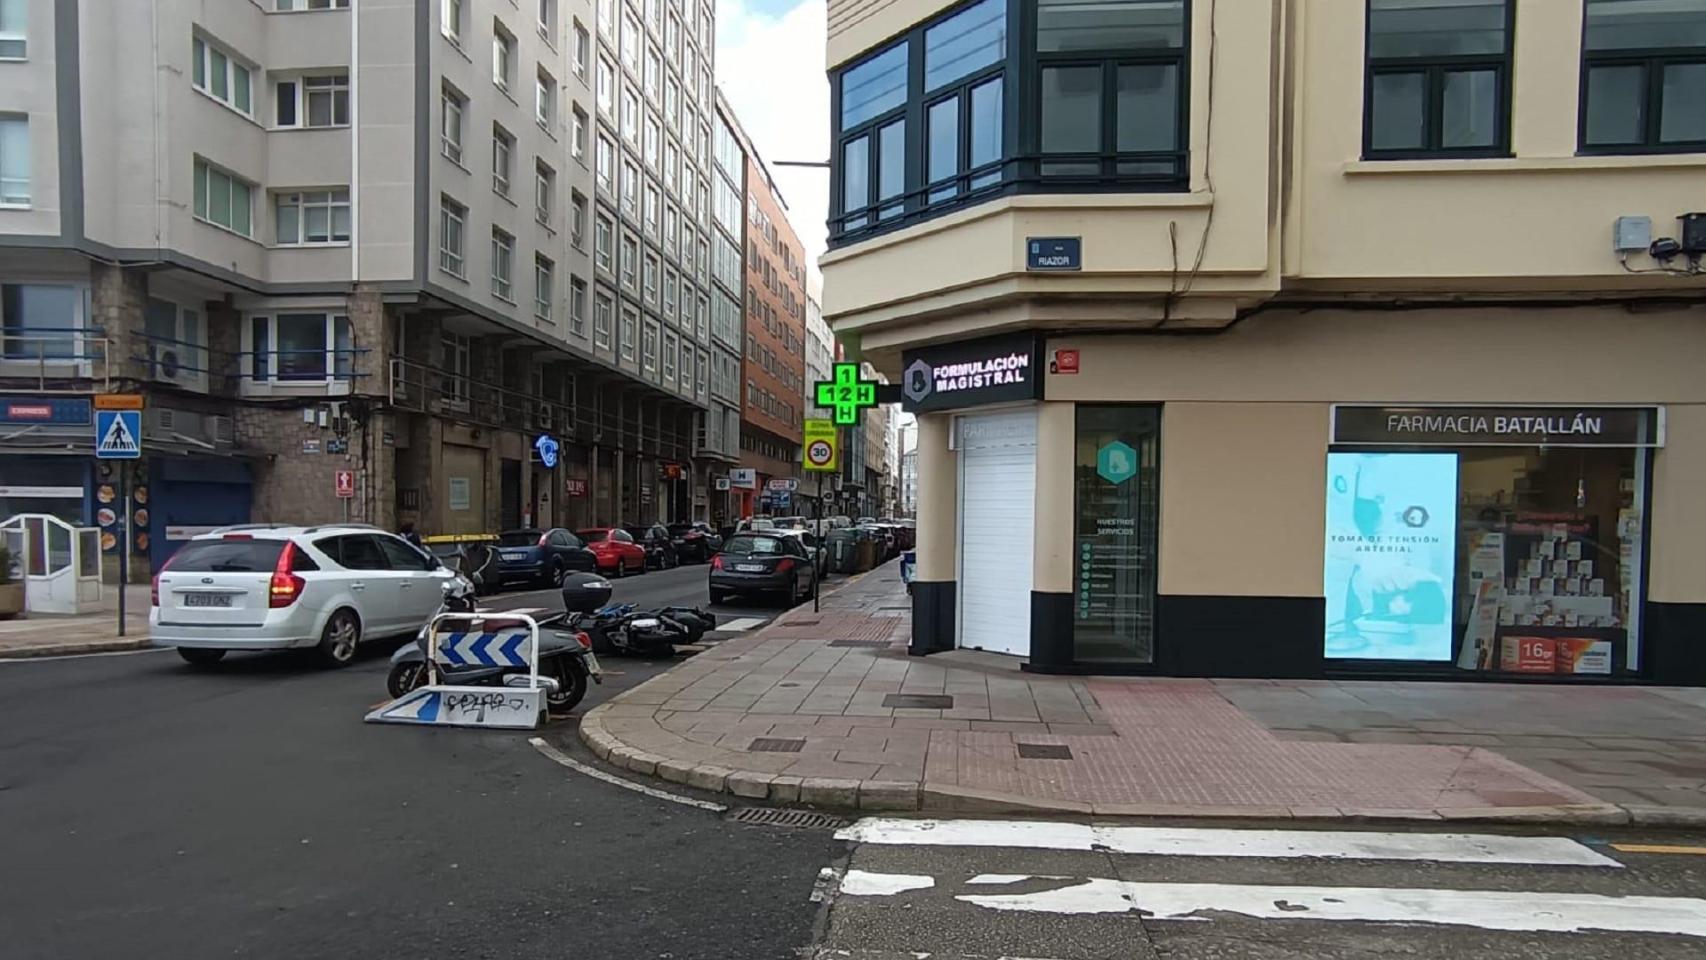 La esquina de la avenida Rubine con la calle Riazor de A Coruña.